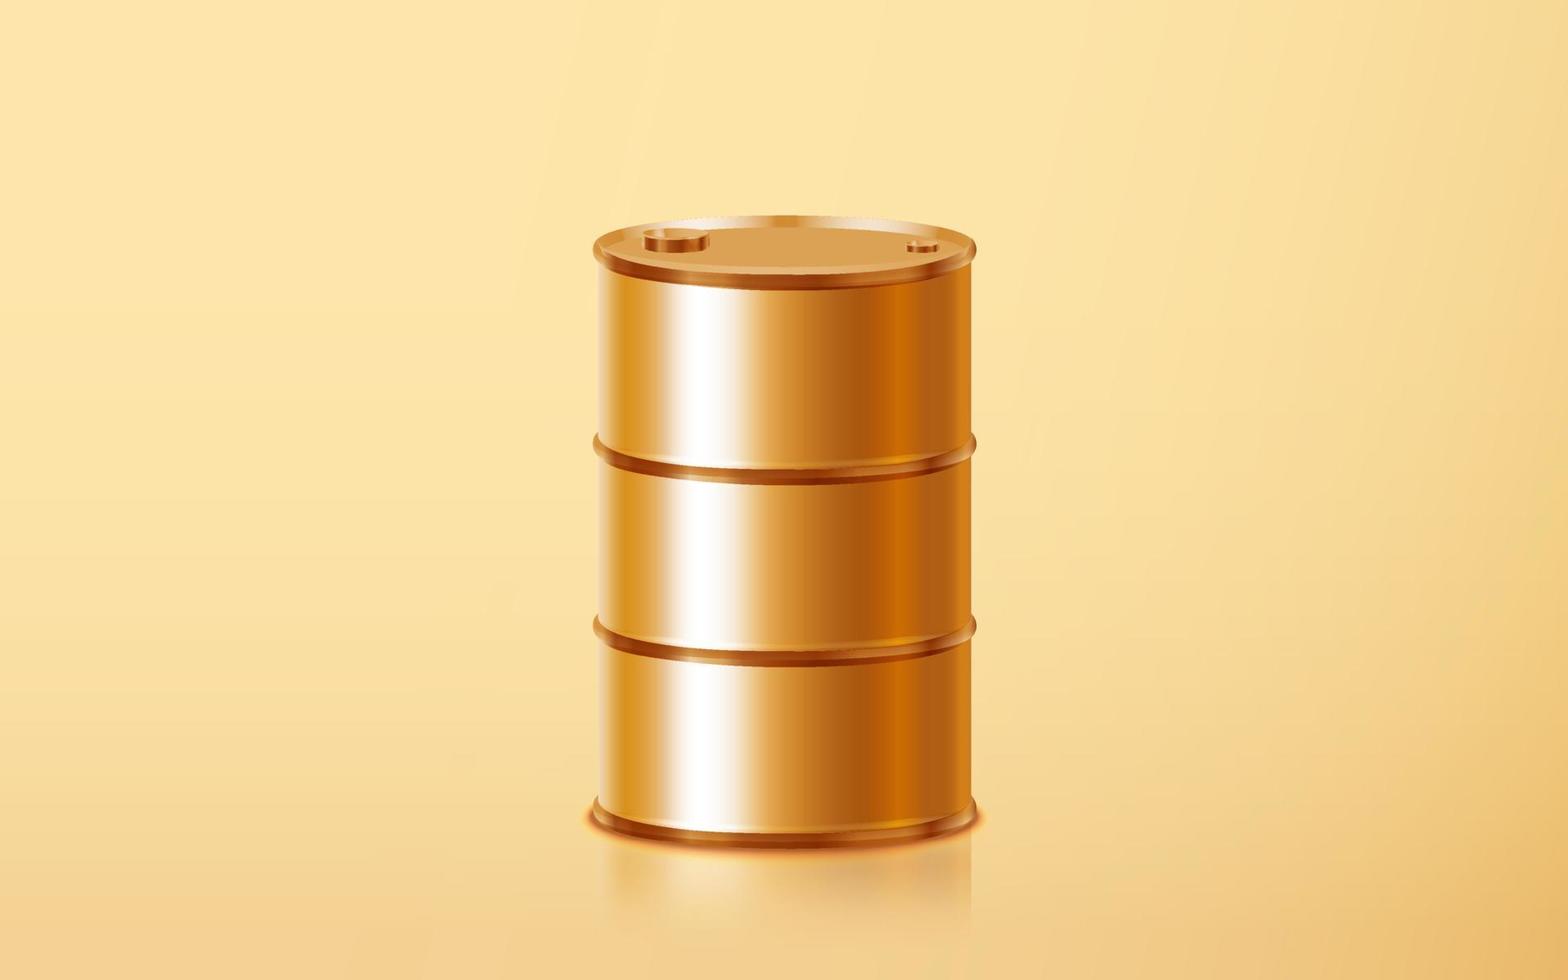 barile di petrolio dorato realistico isolato su fondo oro. simbolo dell'industria della benzina, del diesel, della benzina, del gasolio. gallone di petrolio in metallo dorato. concetto di industria energetica nell'illustrazione vettoriale 3d